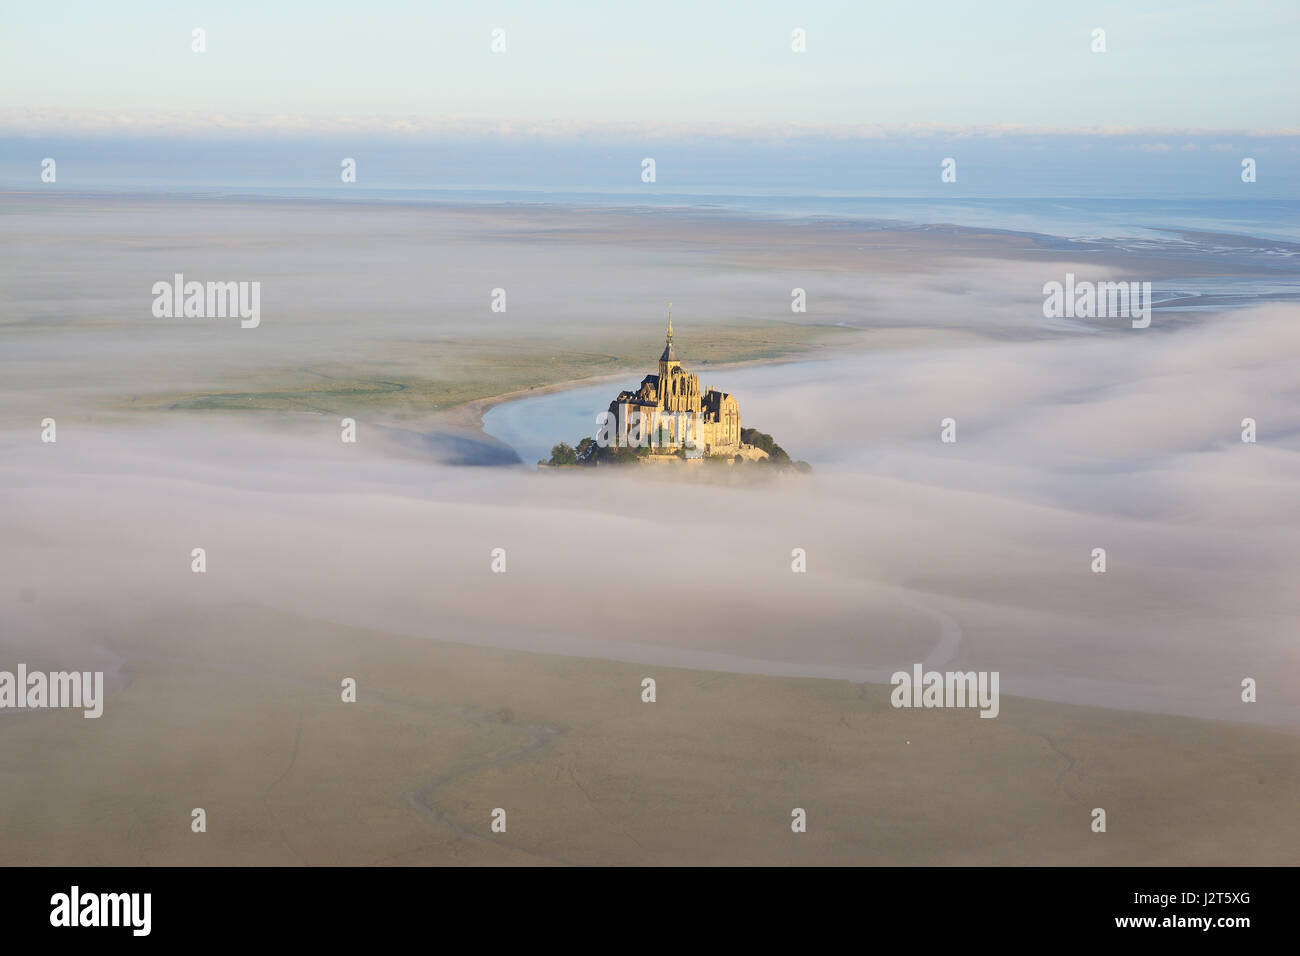 LUFTAUFNAHME. Abtei auf einer hohen felsigen Insel in einer Gezeitenzone. Mont Saint-Michel, Manche, Normandie, Frankreich. Stockfoto